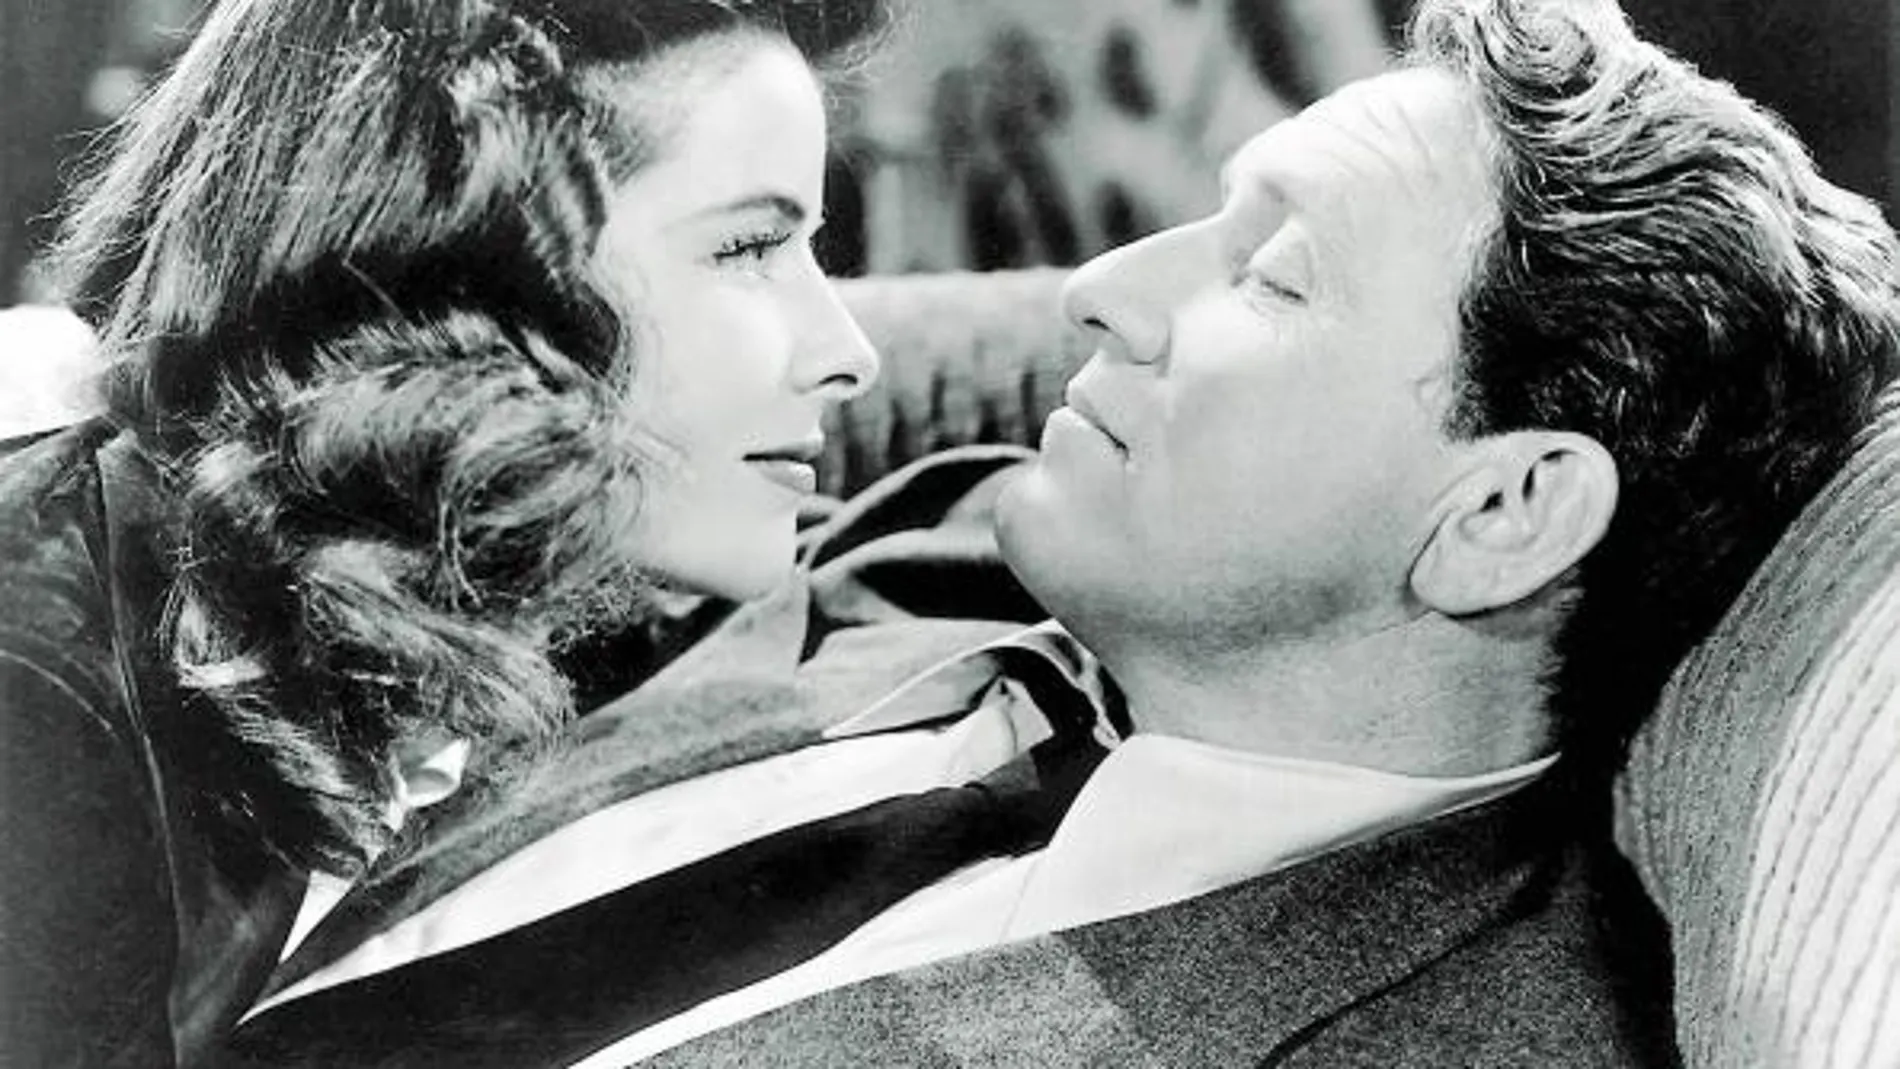 Feminista y liberal, la actriz renunció a todo por Spencer Tracy, un irlandés rudo y alcohólico